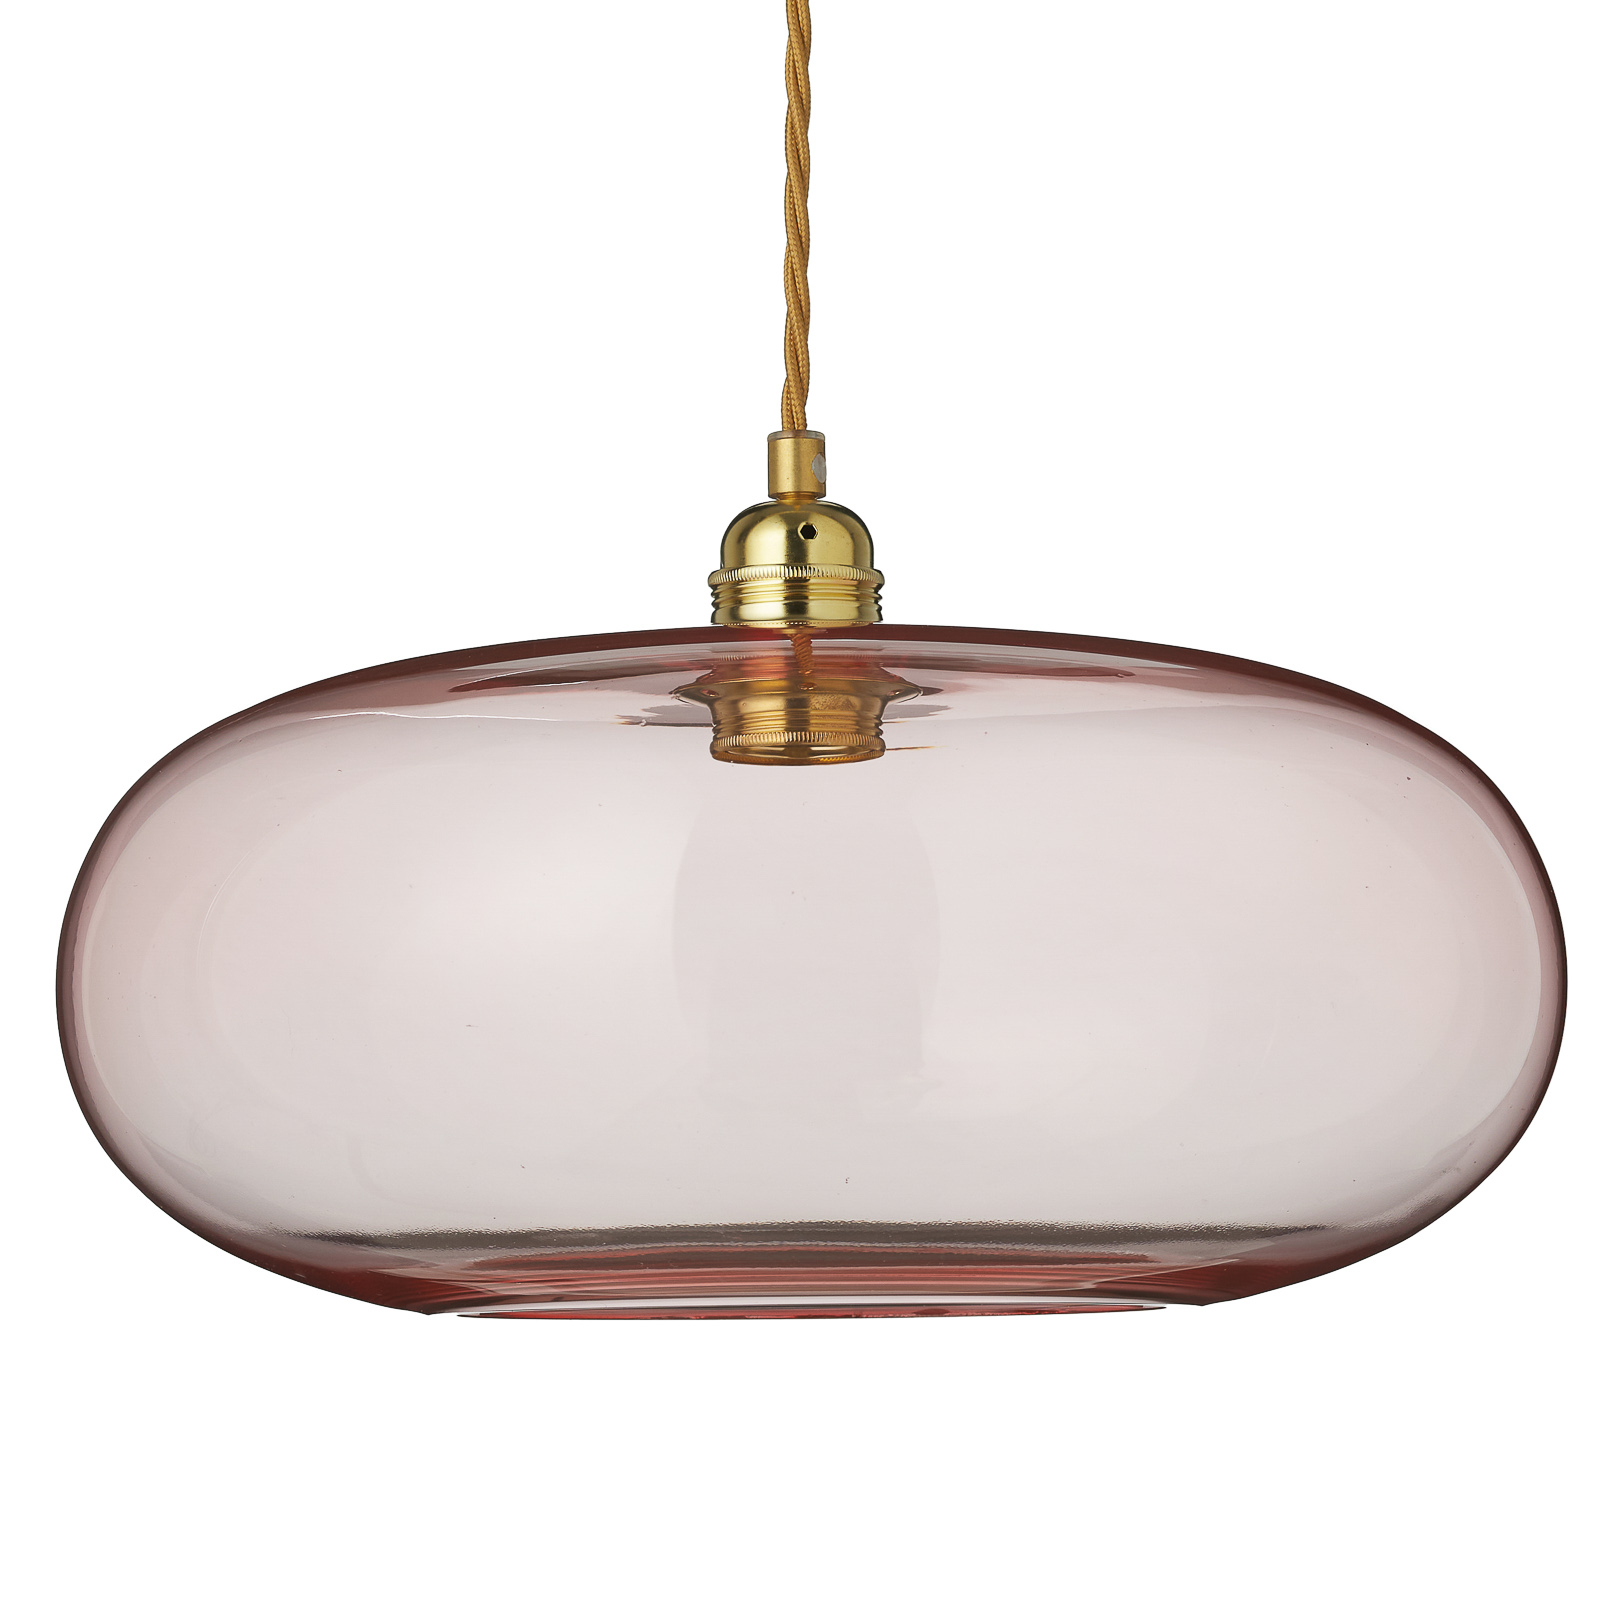 EBB & FLOW Horizon függő lámpa rozé-arany Ø 36 cm